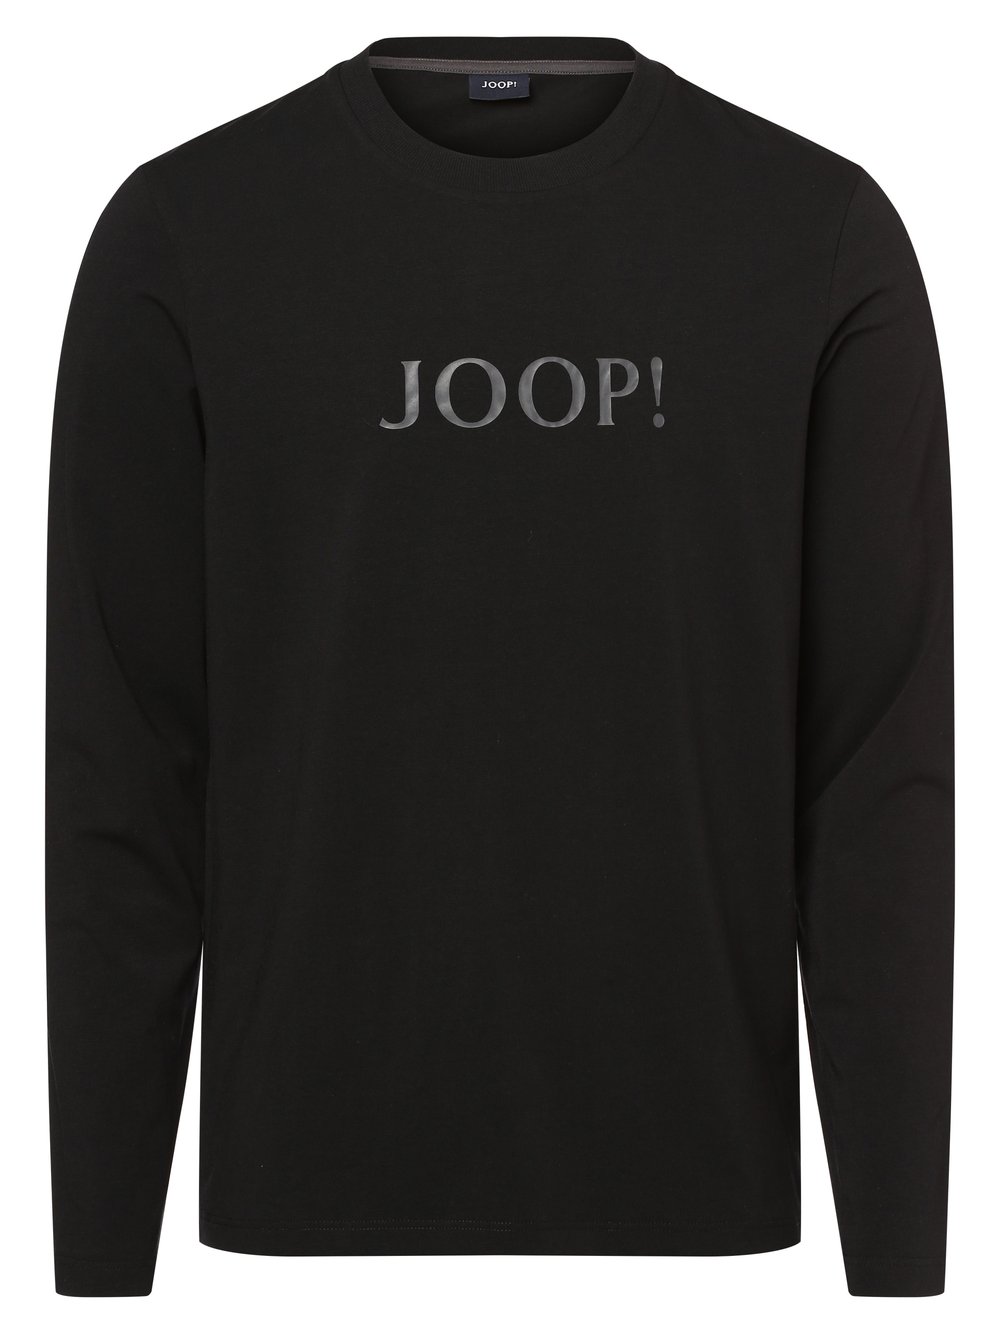 Joop - Męska koszulka od piżamy, czarny